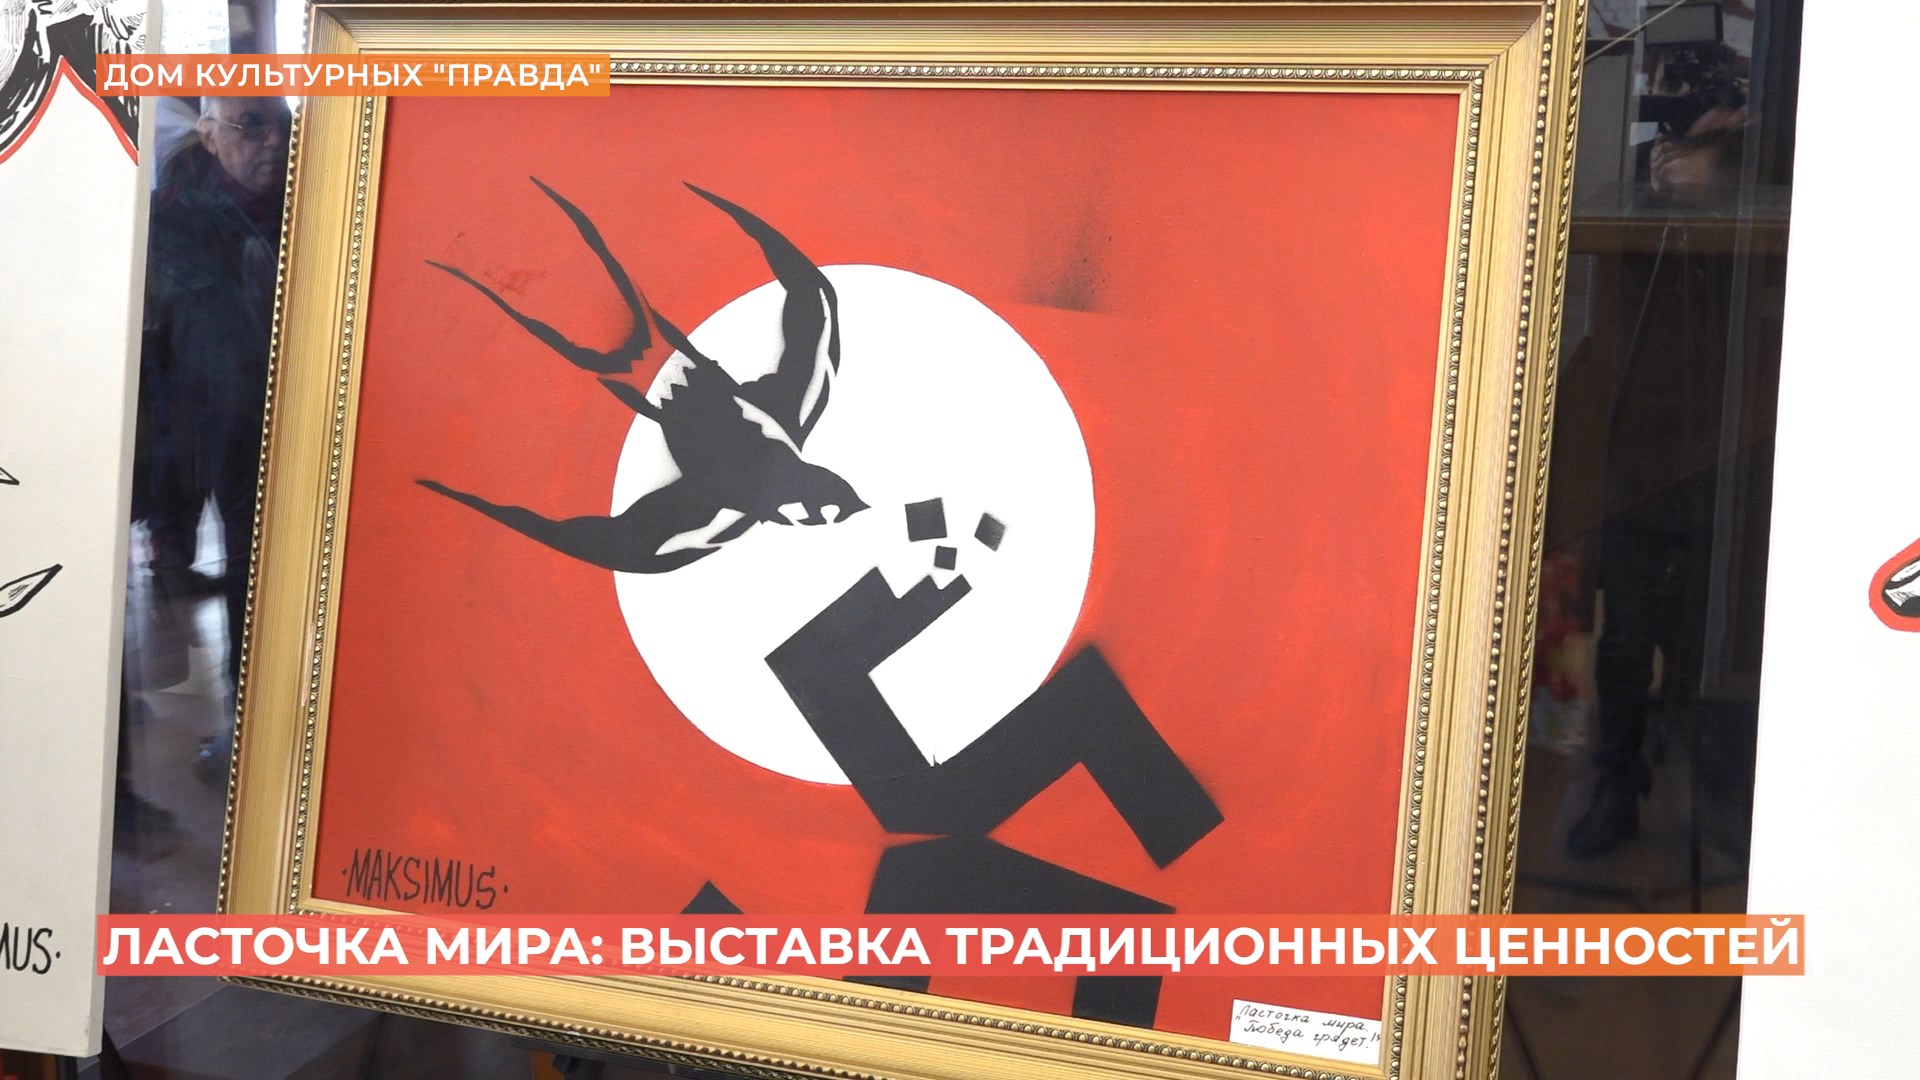 Выставка традиционных ценностей «Ласточка мира» прошла в Ростове